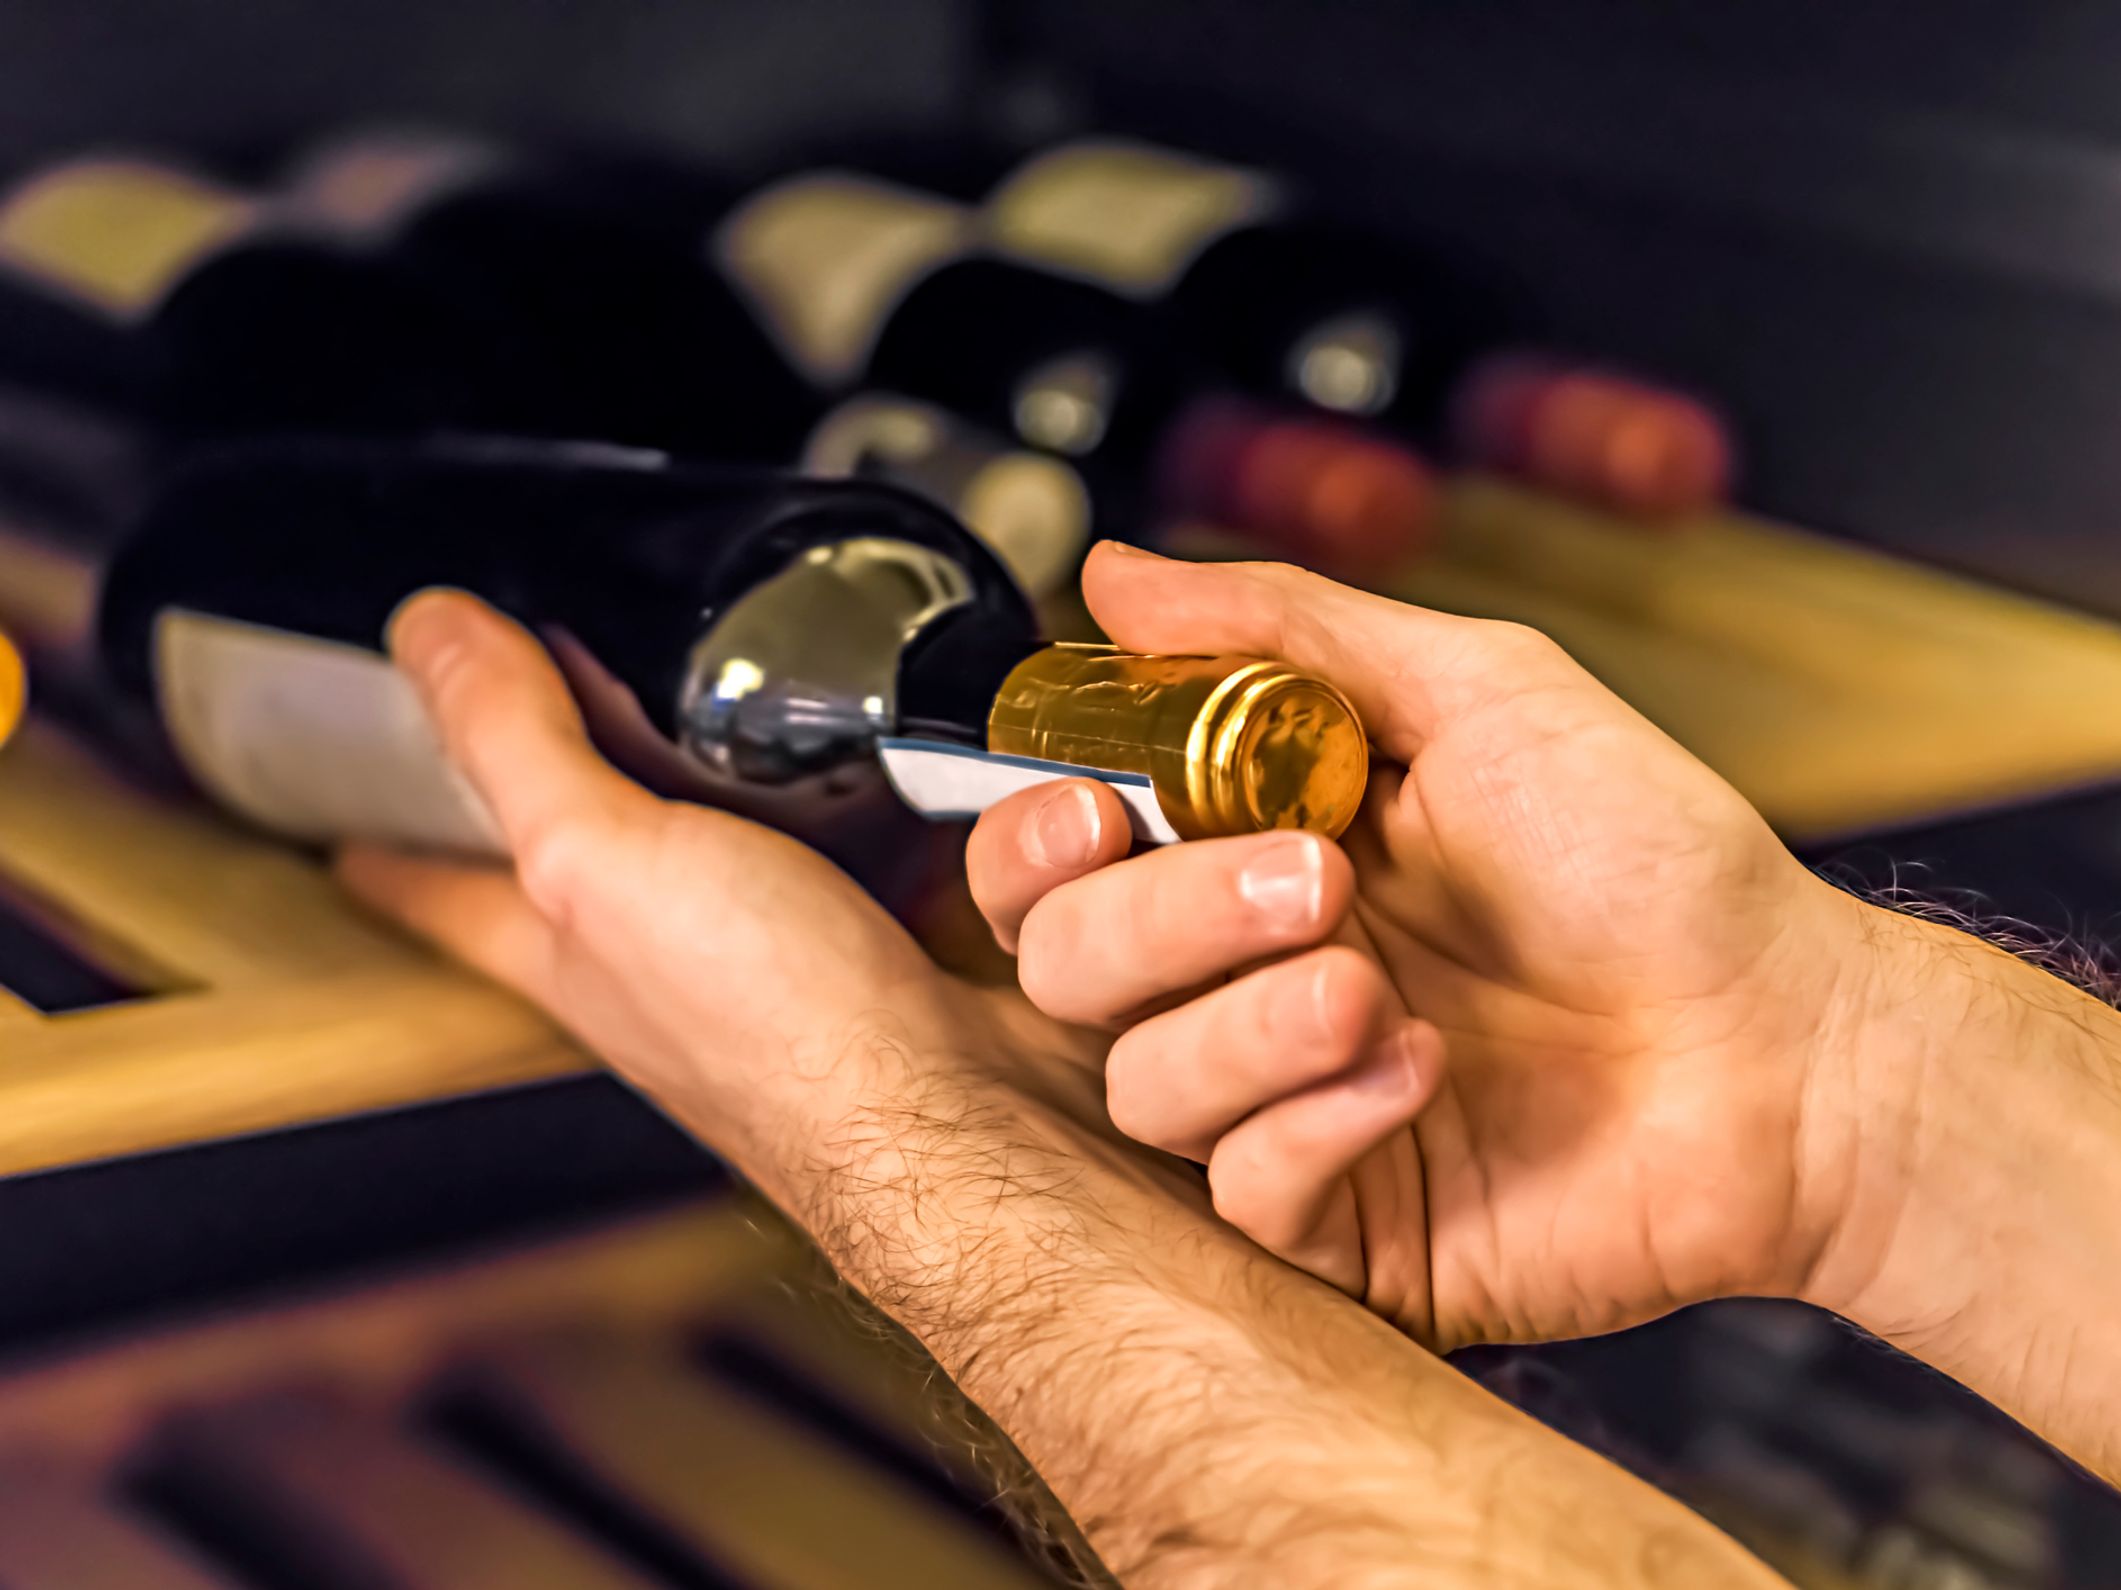 Comment bien ranger ses bouteilles de vin dans sa cave naturelle ?, Les  conseils d'expert